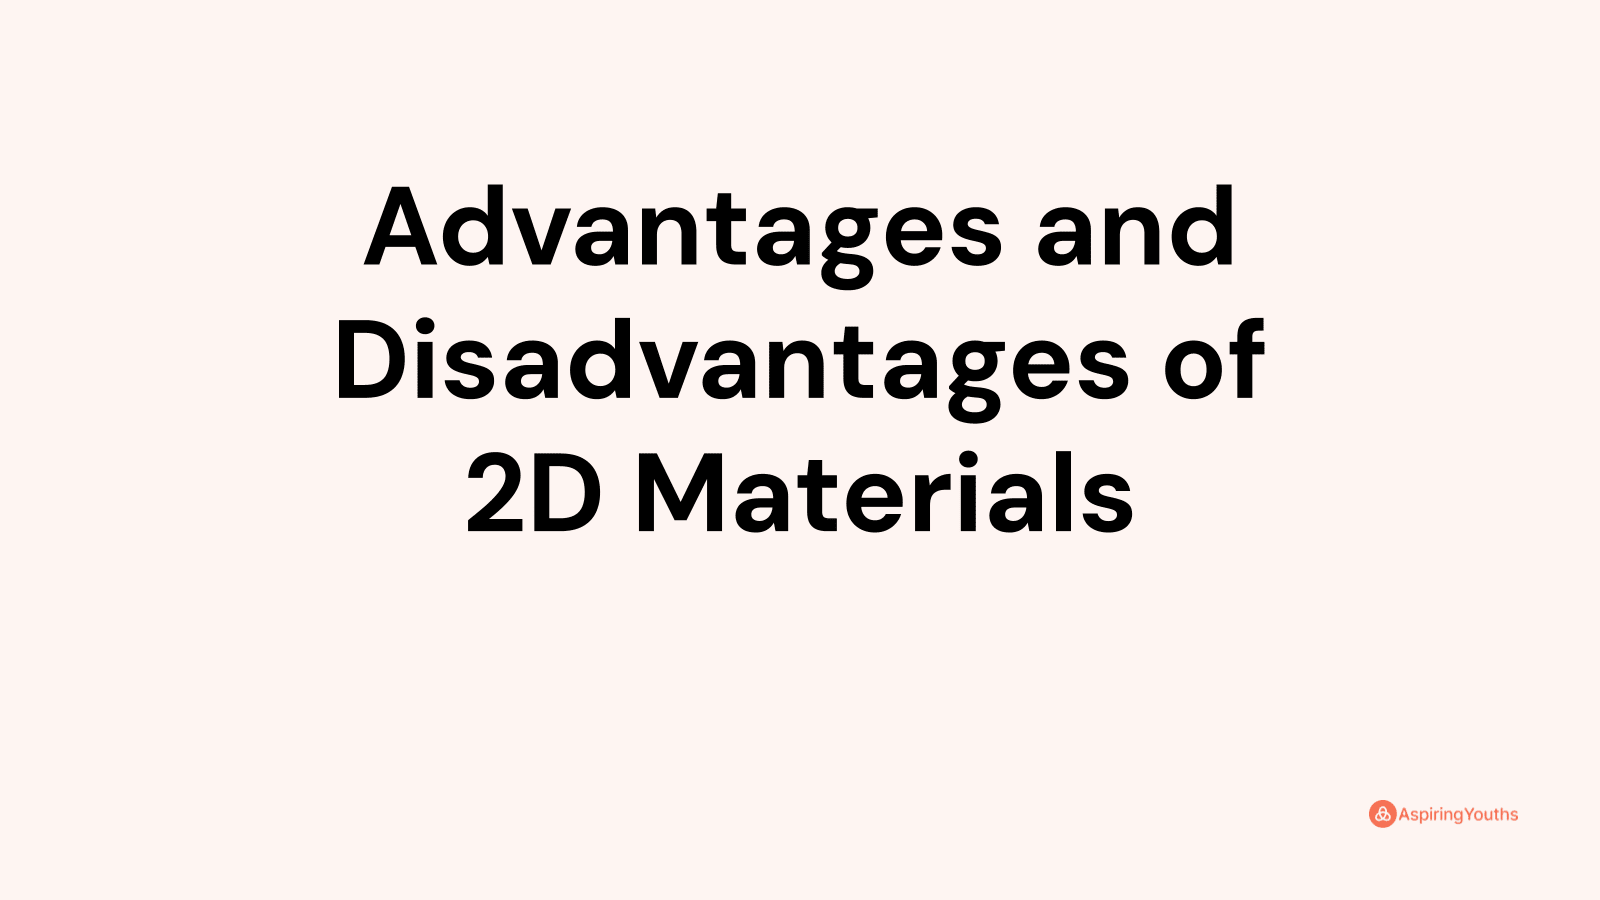 Advantages and disadvantages of 2D Materials